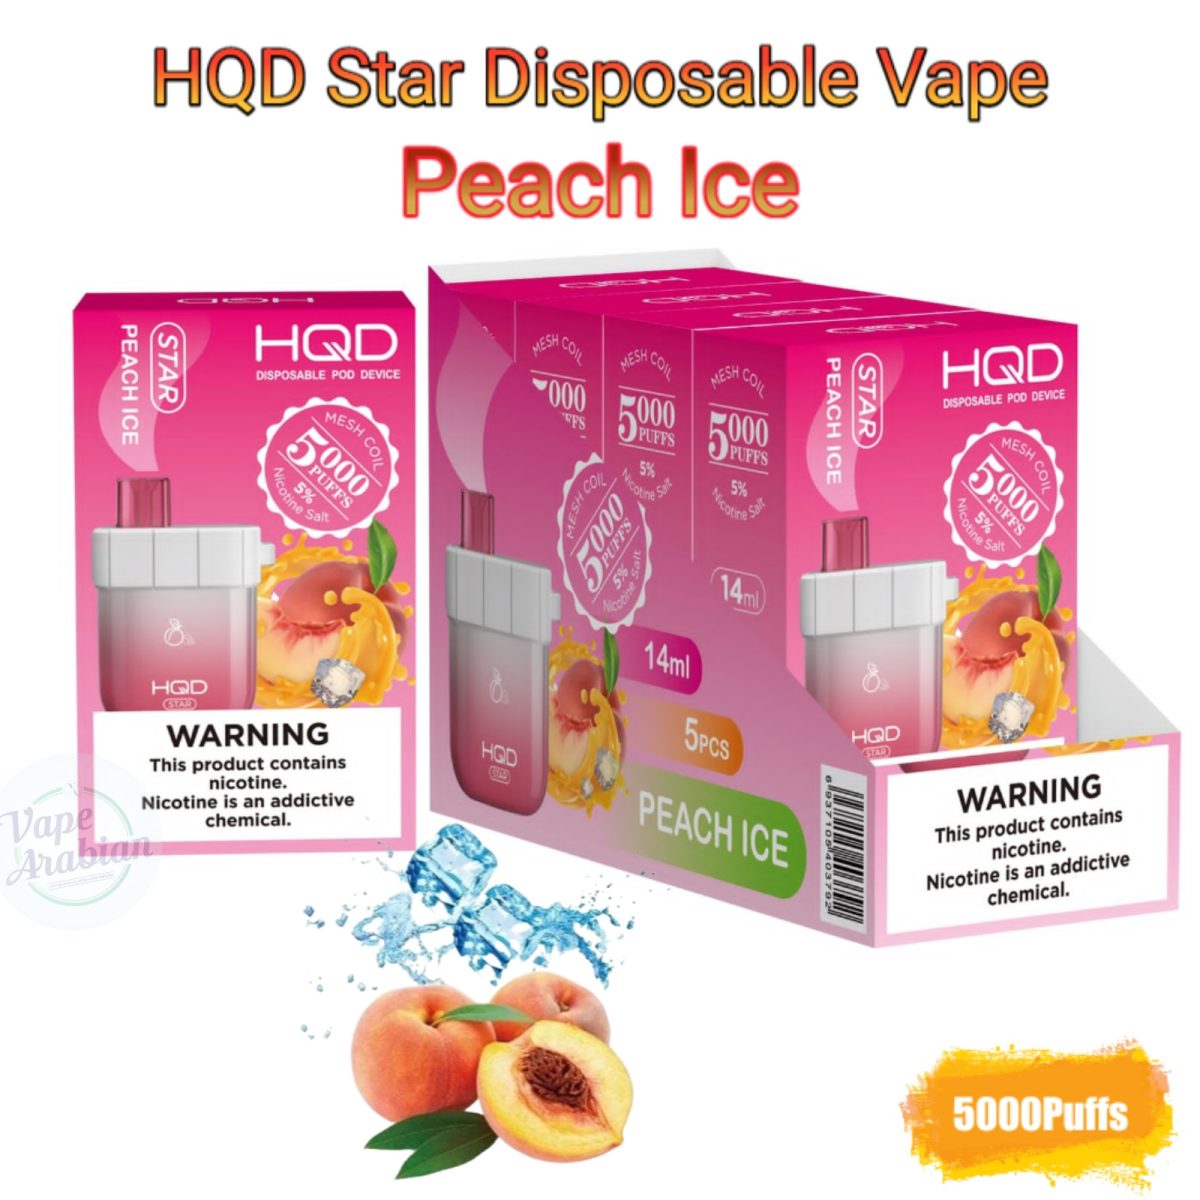 HQD Star Disposable Vape 5000 Puffs- Peach Ice